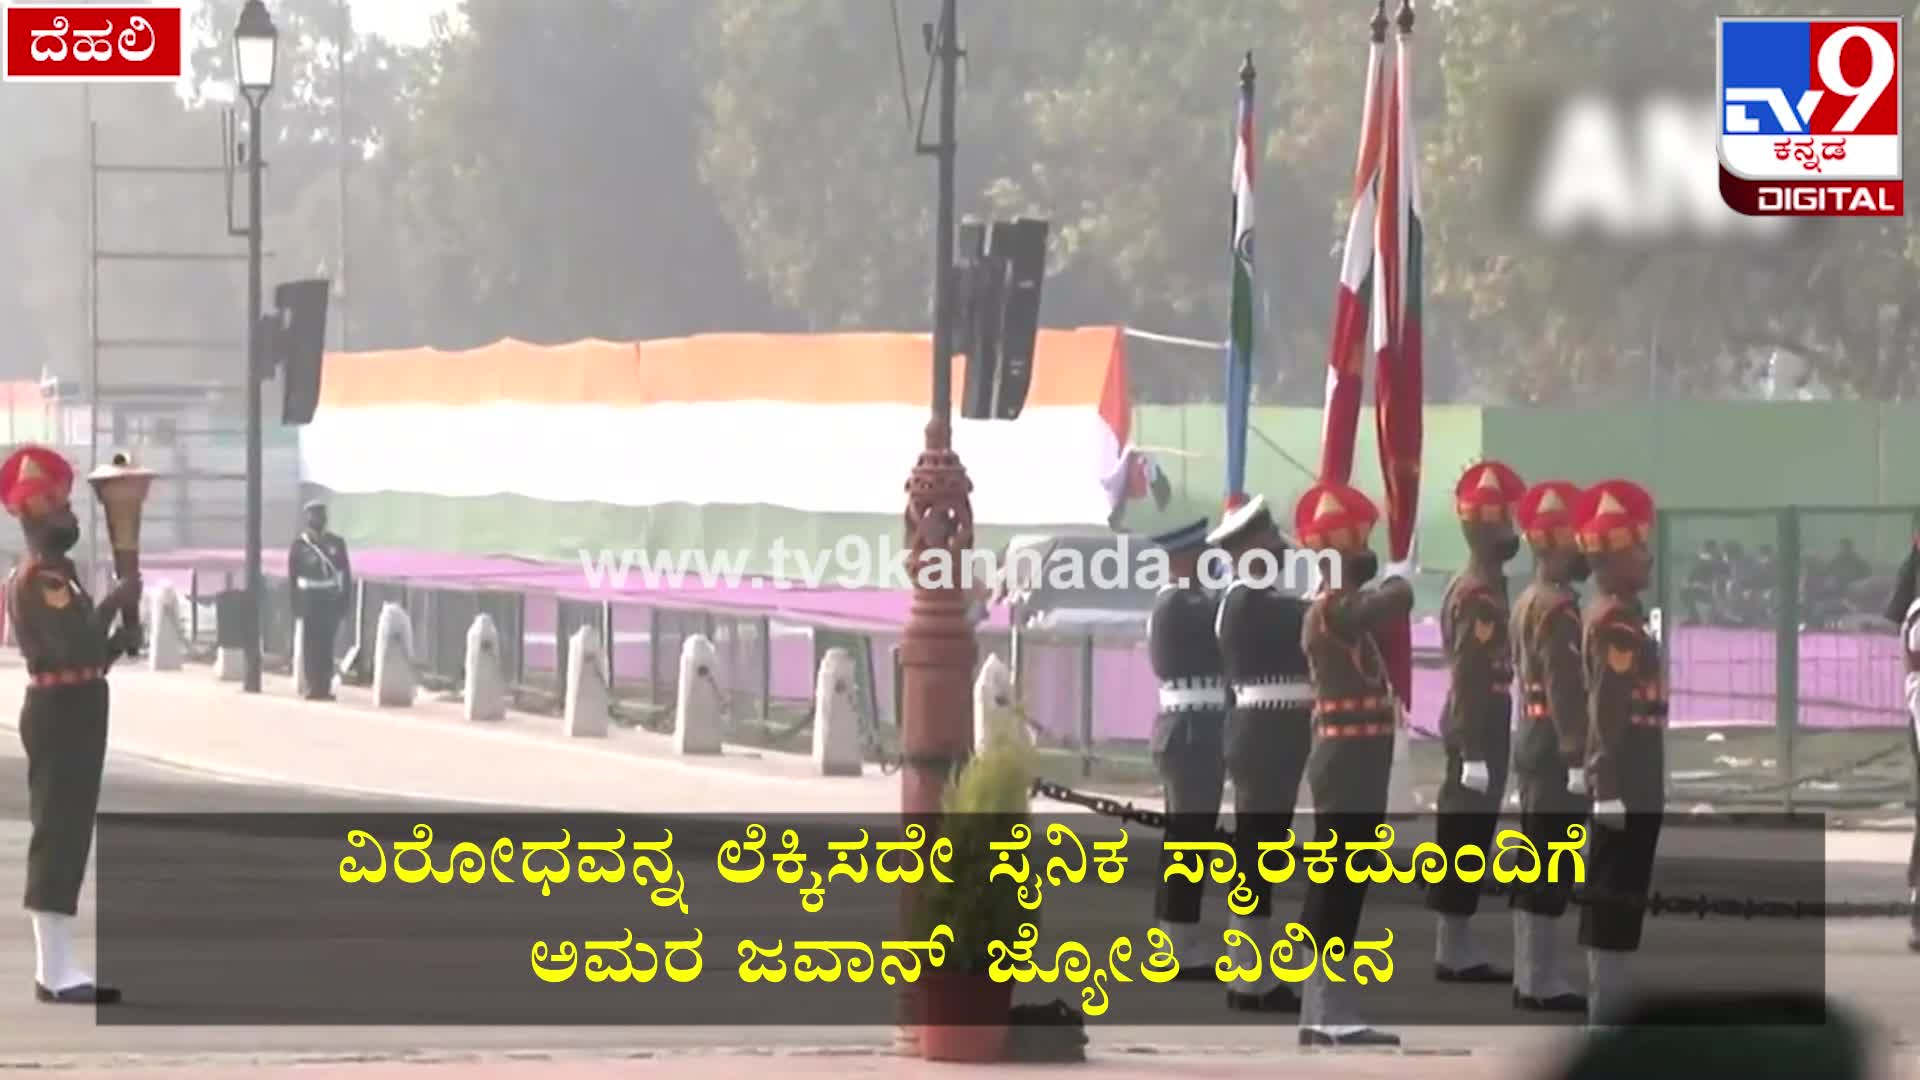 👌ಇಂಡಿಯಾ ಗೇಟ್ ನಲ್ಲಿ ನೇತಾಜಿ ಪ್ರತಿಮೆ ಸ್ಥಾಪನೆ Videos • Tv9 Kannada(@tv9kannadaofficial)  on ShareChat